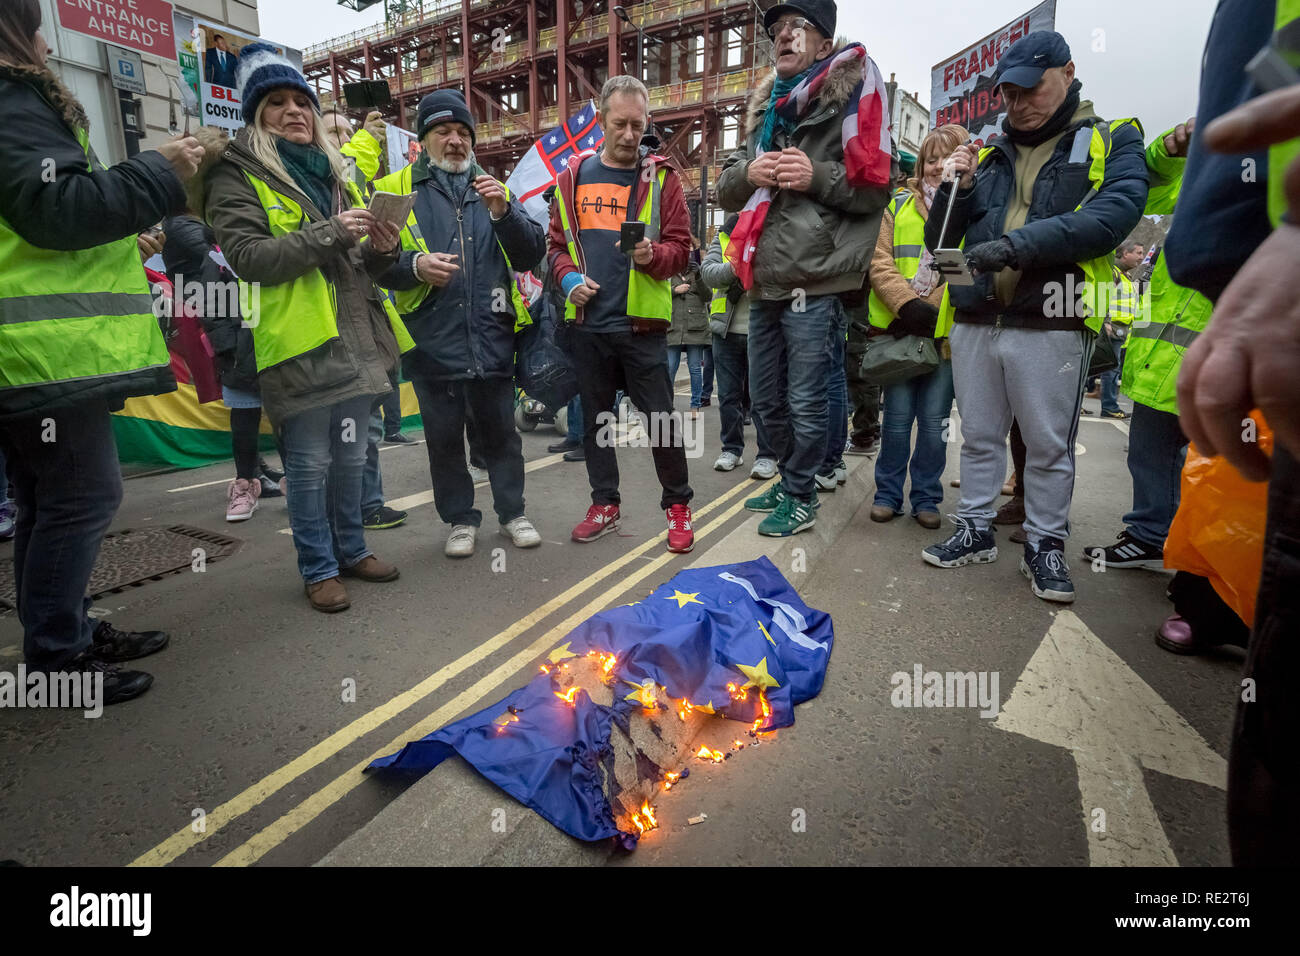 Londres, Royaume-Uni. 19 janvier 2019. Pro-Brexit se fait appeler les manifestants jaune 'UK' circulation bloquer les routes et de la circulation, à Westminster. Crédit : Guy Josse/Alamy Live News Banque D'Images